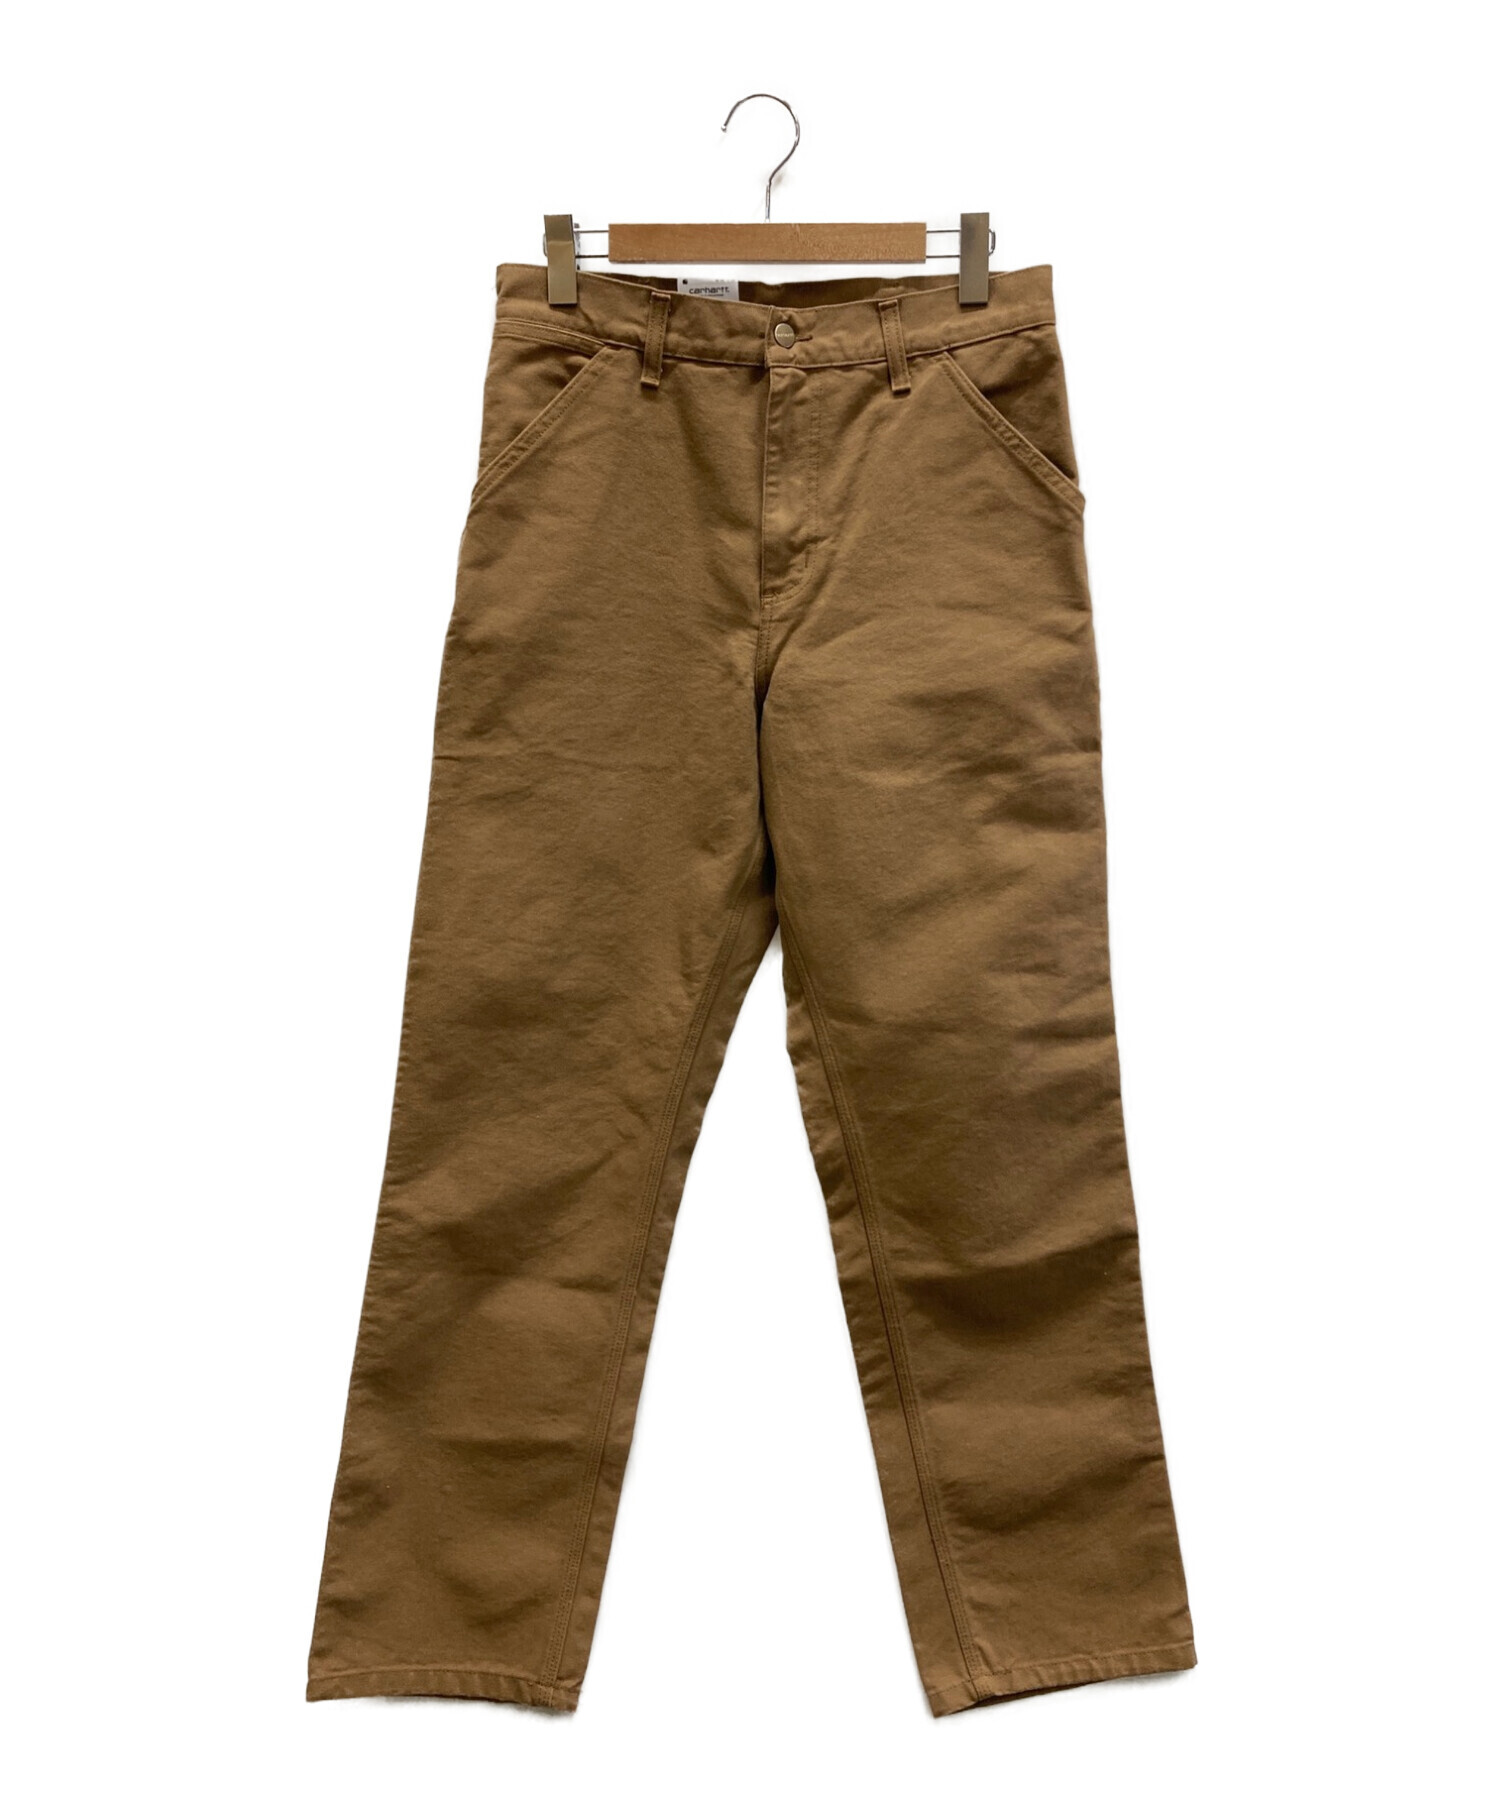 Carhartt WIP (カーハートダブリューアイピー) SINGLE KNEE PANTS ブラウン サイズ:30×32